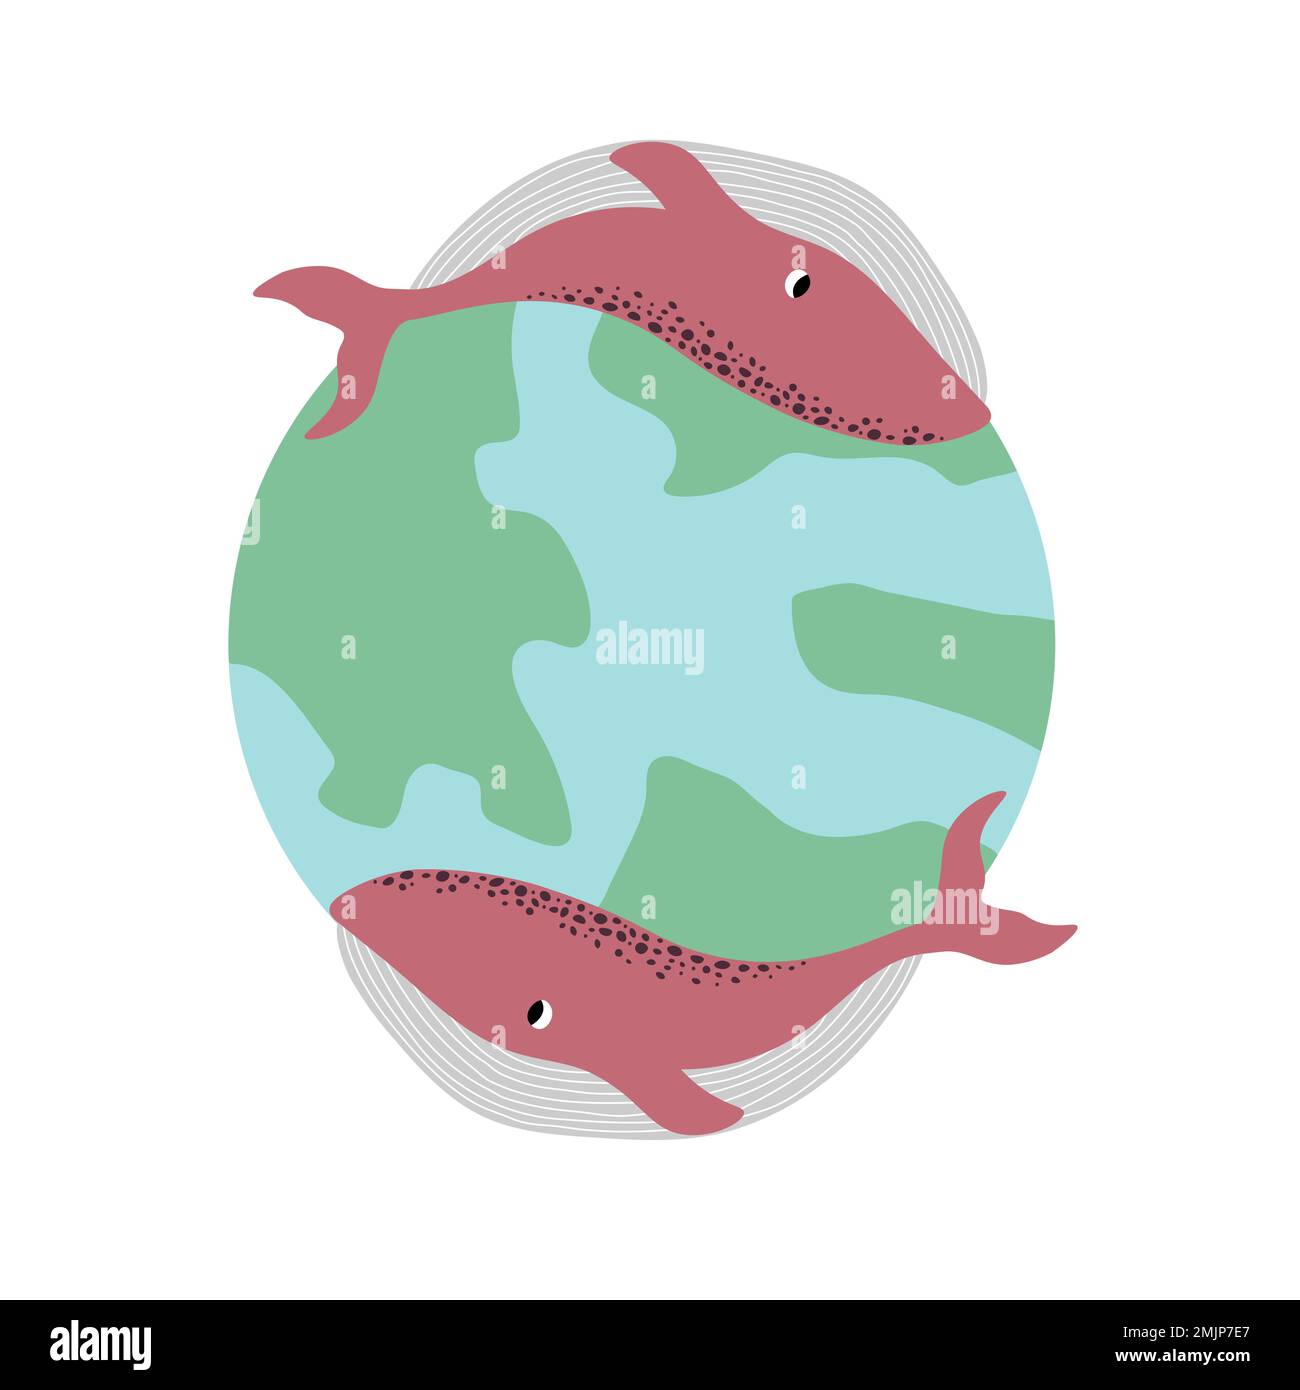 Vektor Ozean Illustration mit Wal, Erde. Unterwasser Meerestiere. Ökologie Design für Banner, Flyer, Postkarte, Website Design, T-Shirt, Poster Stock Vektor